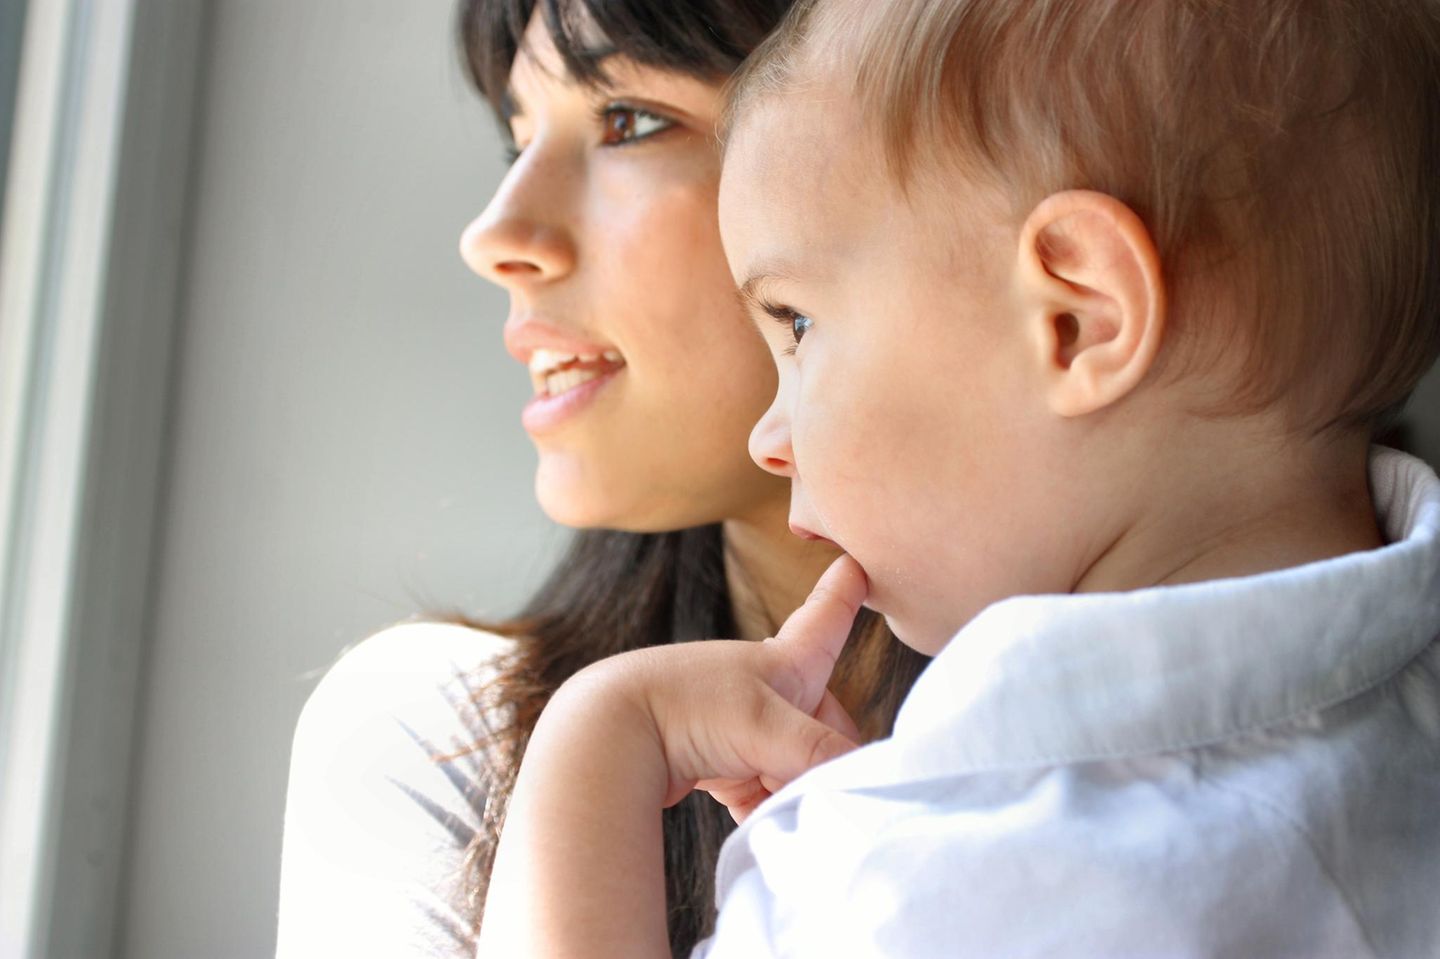 Frau mit Kleinkind auf dem Arm, beide schauen in die gleiche Richtung, das Kind mit Finger im Mund